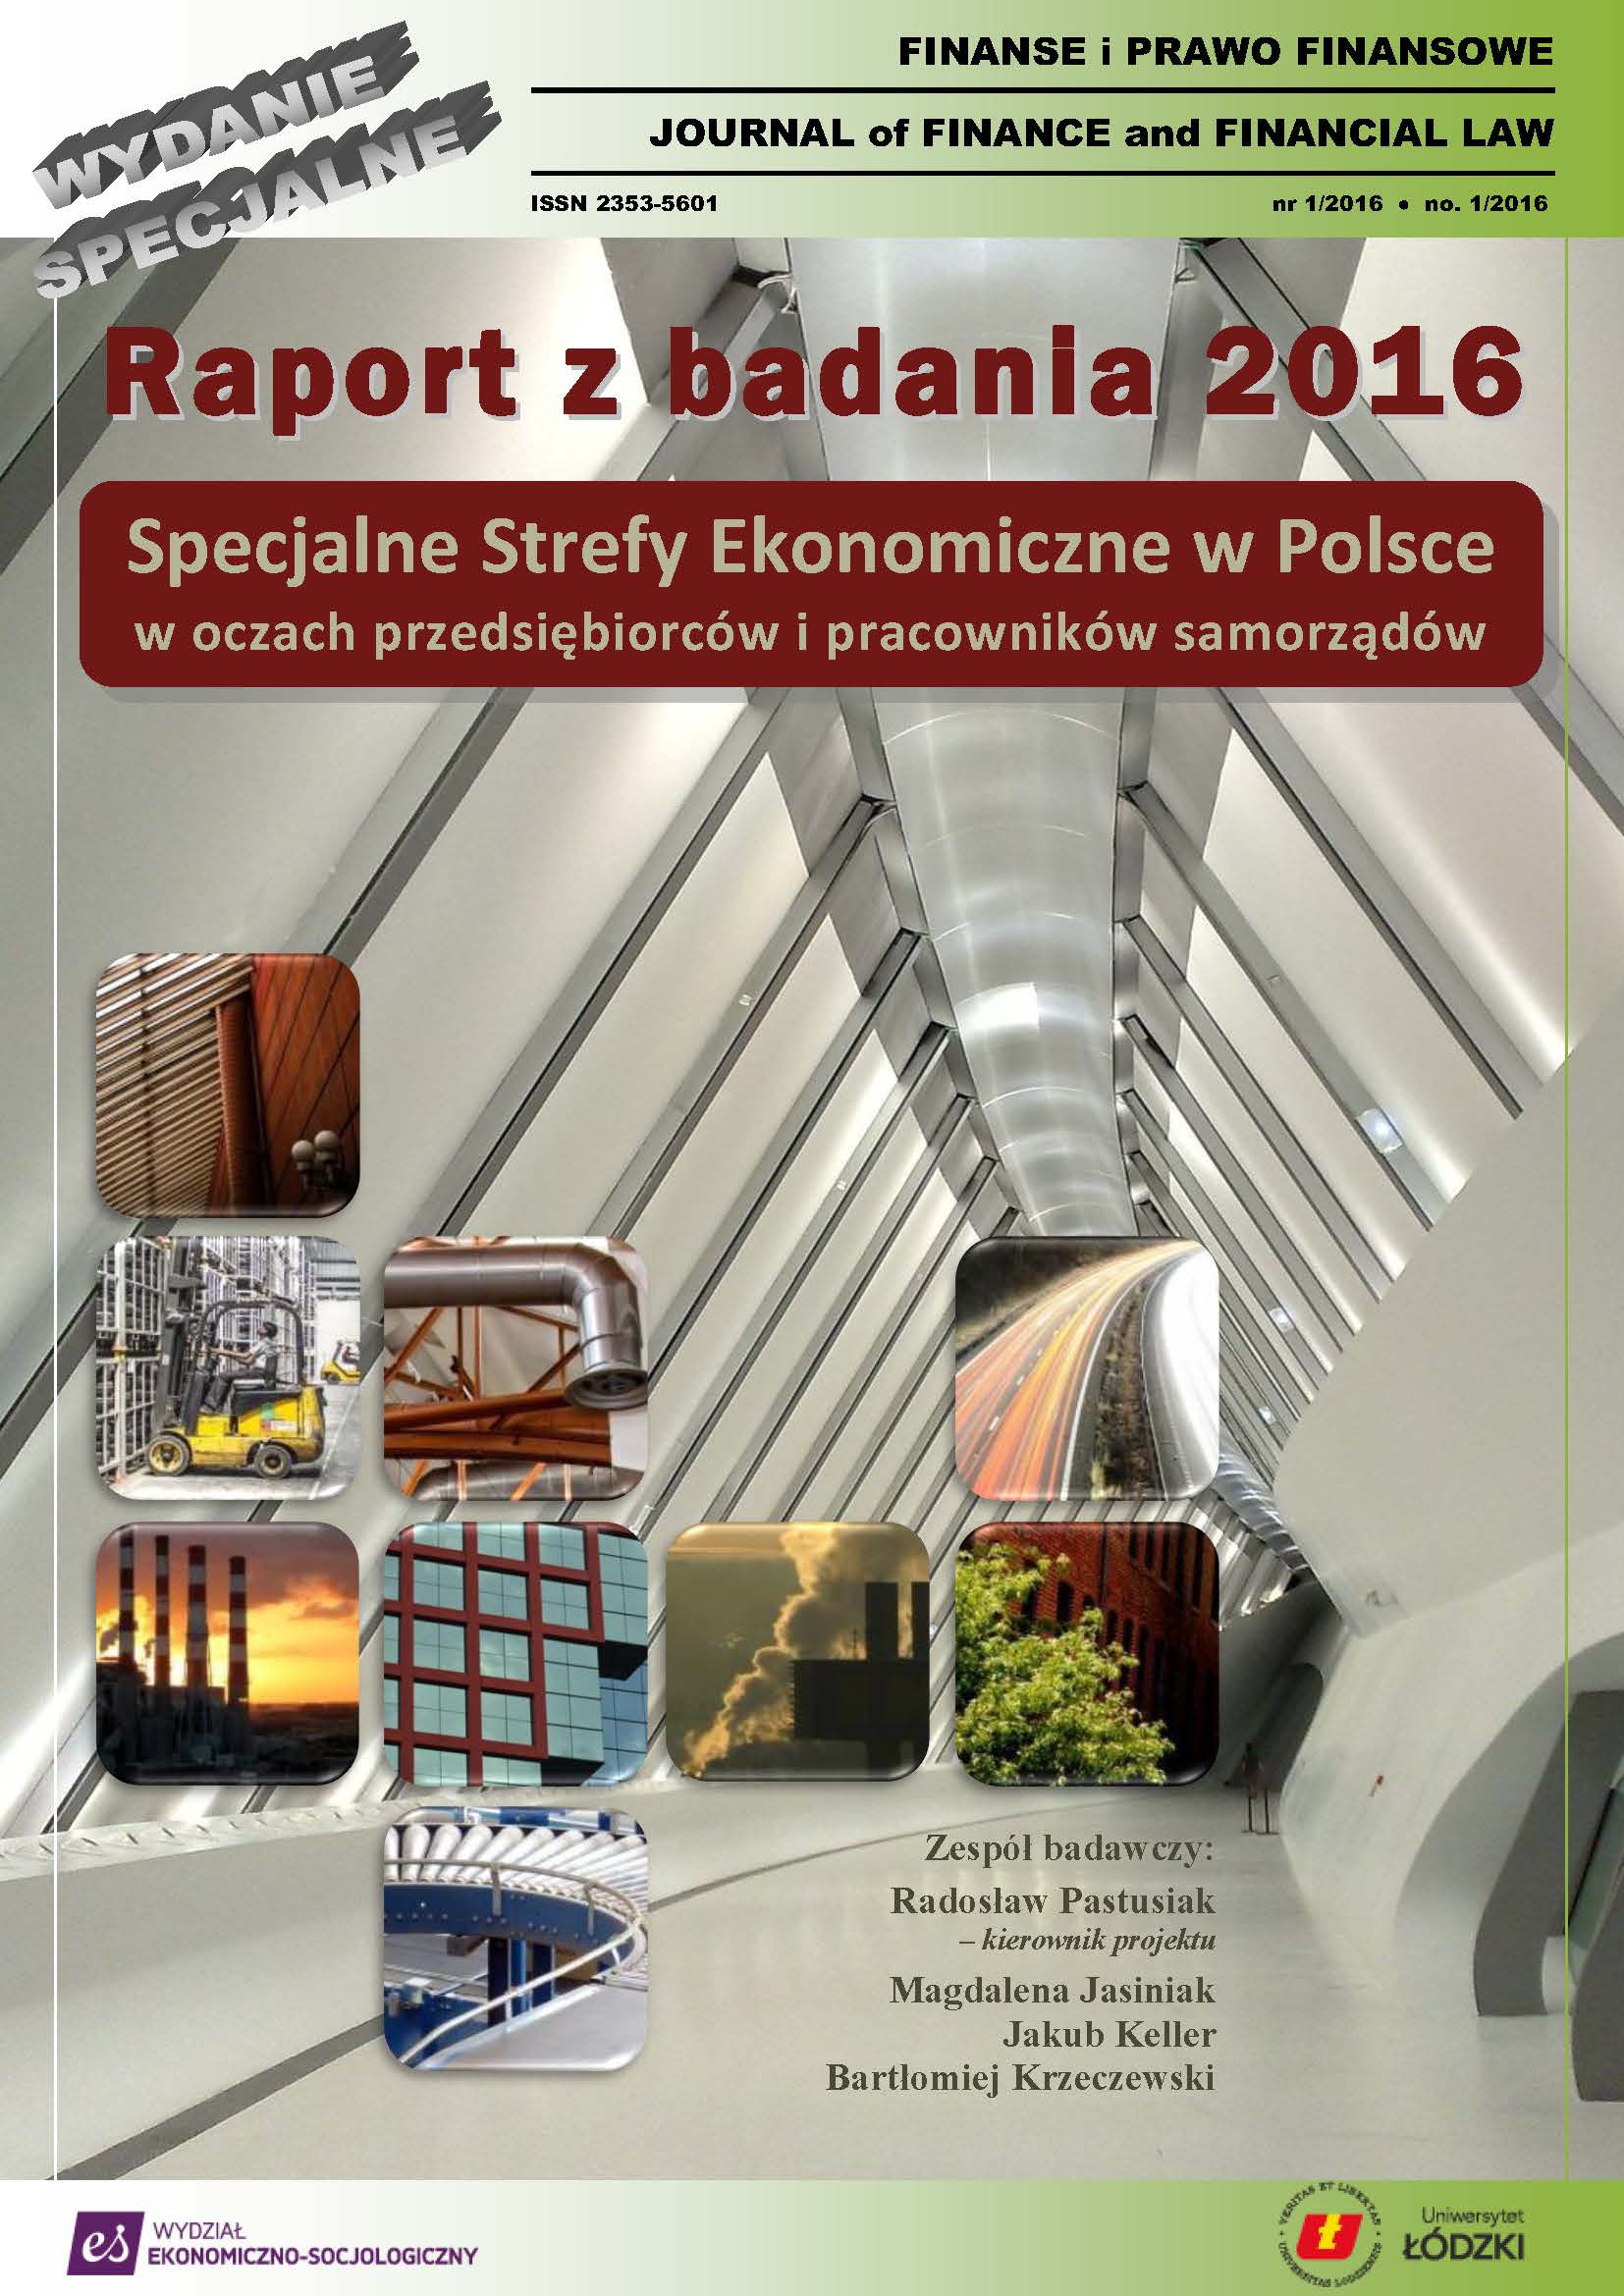 					View No. 1 (2016): Raport z badania 2016. Specjalne Strefy Ekonomiczne w Polsce w oczach przedsiębiorców i pracowników samorządu
				